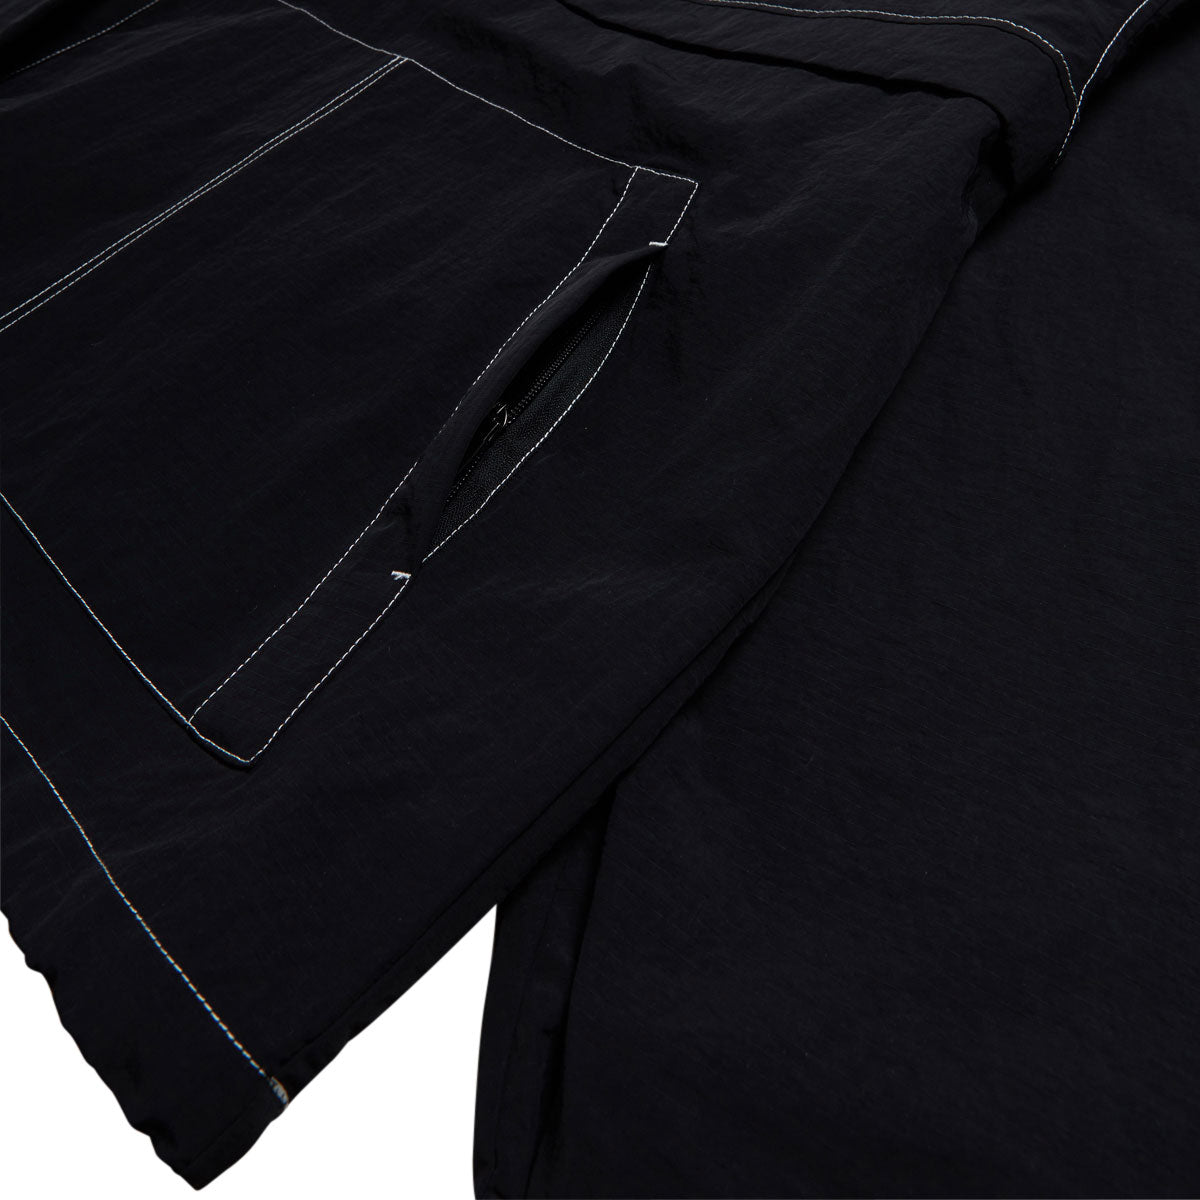 GX1000 Anorak Jacket - Black image 3